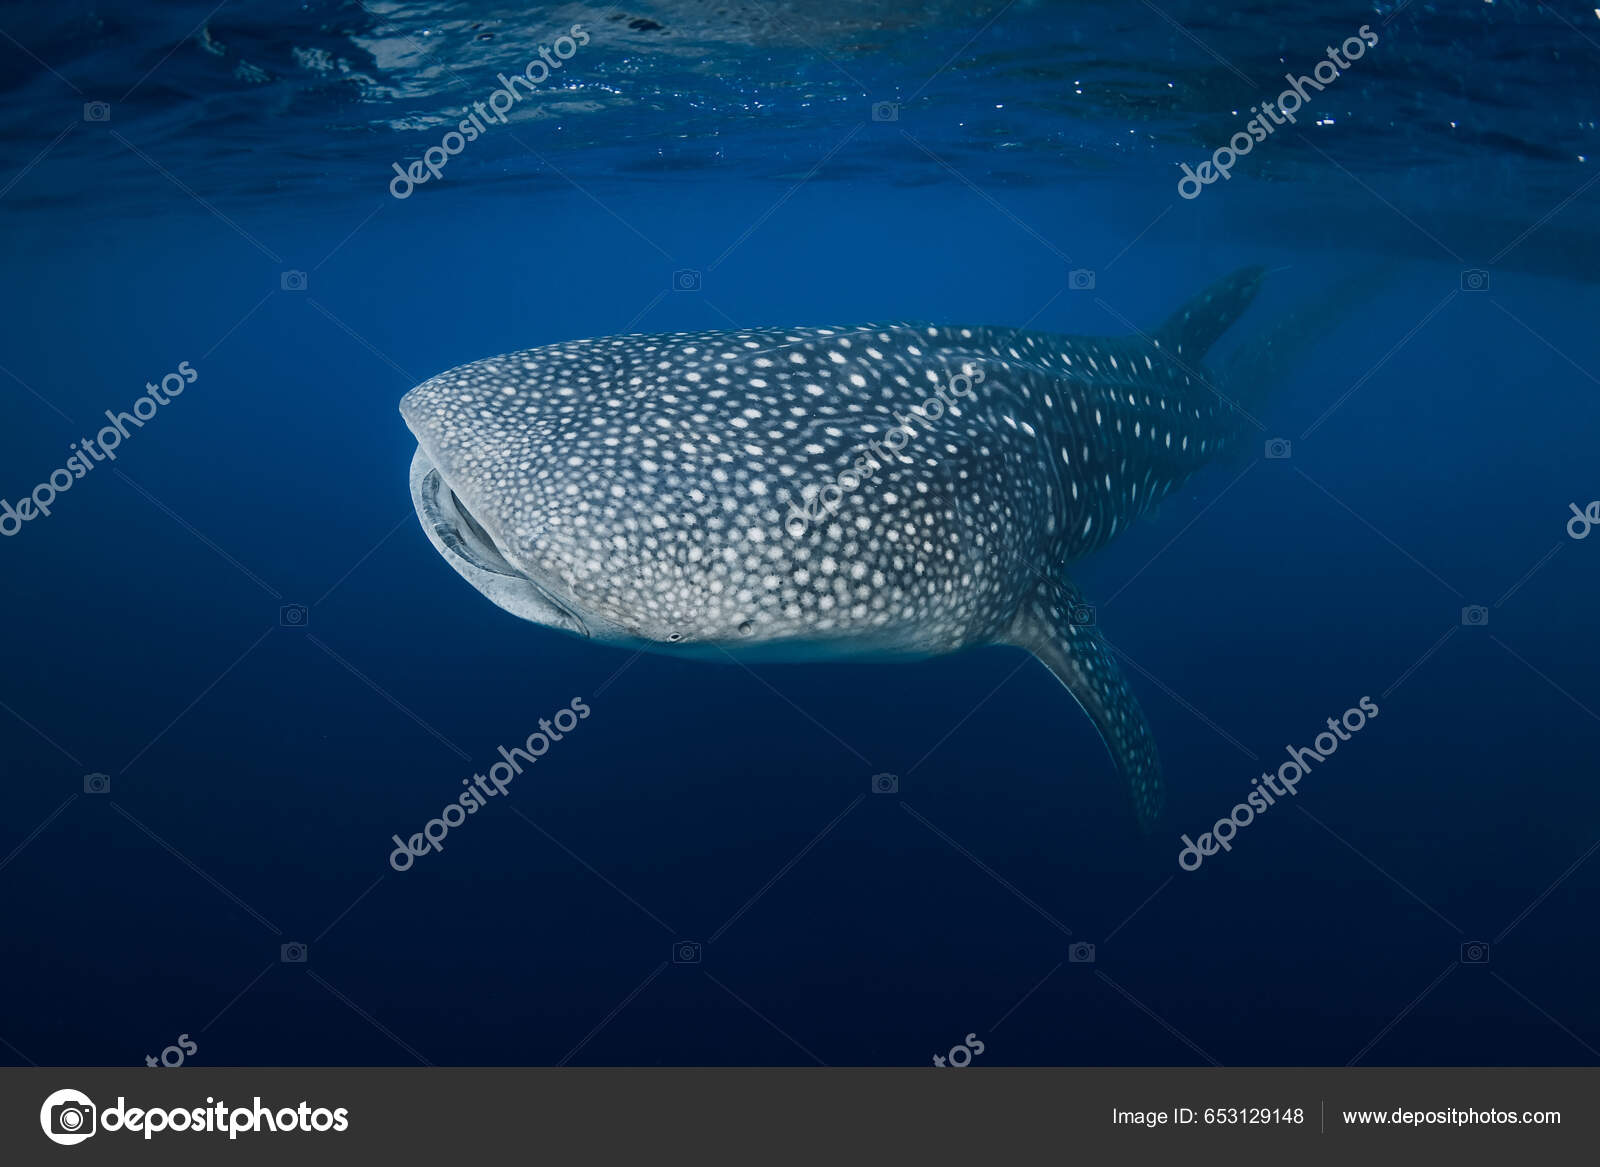 Derin Mavi Okyanusta Balina Köpekbalığı Dev Balina Köpekbalığı Suyun  Altında stok fotoğrafçılık ©Keola, telifsiz resim #653129148